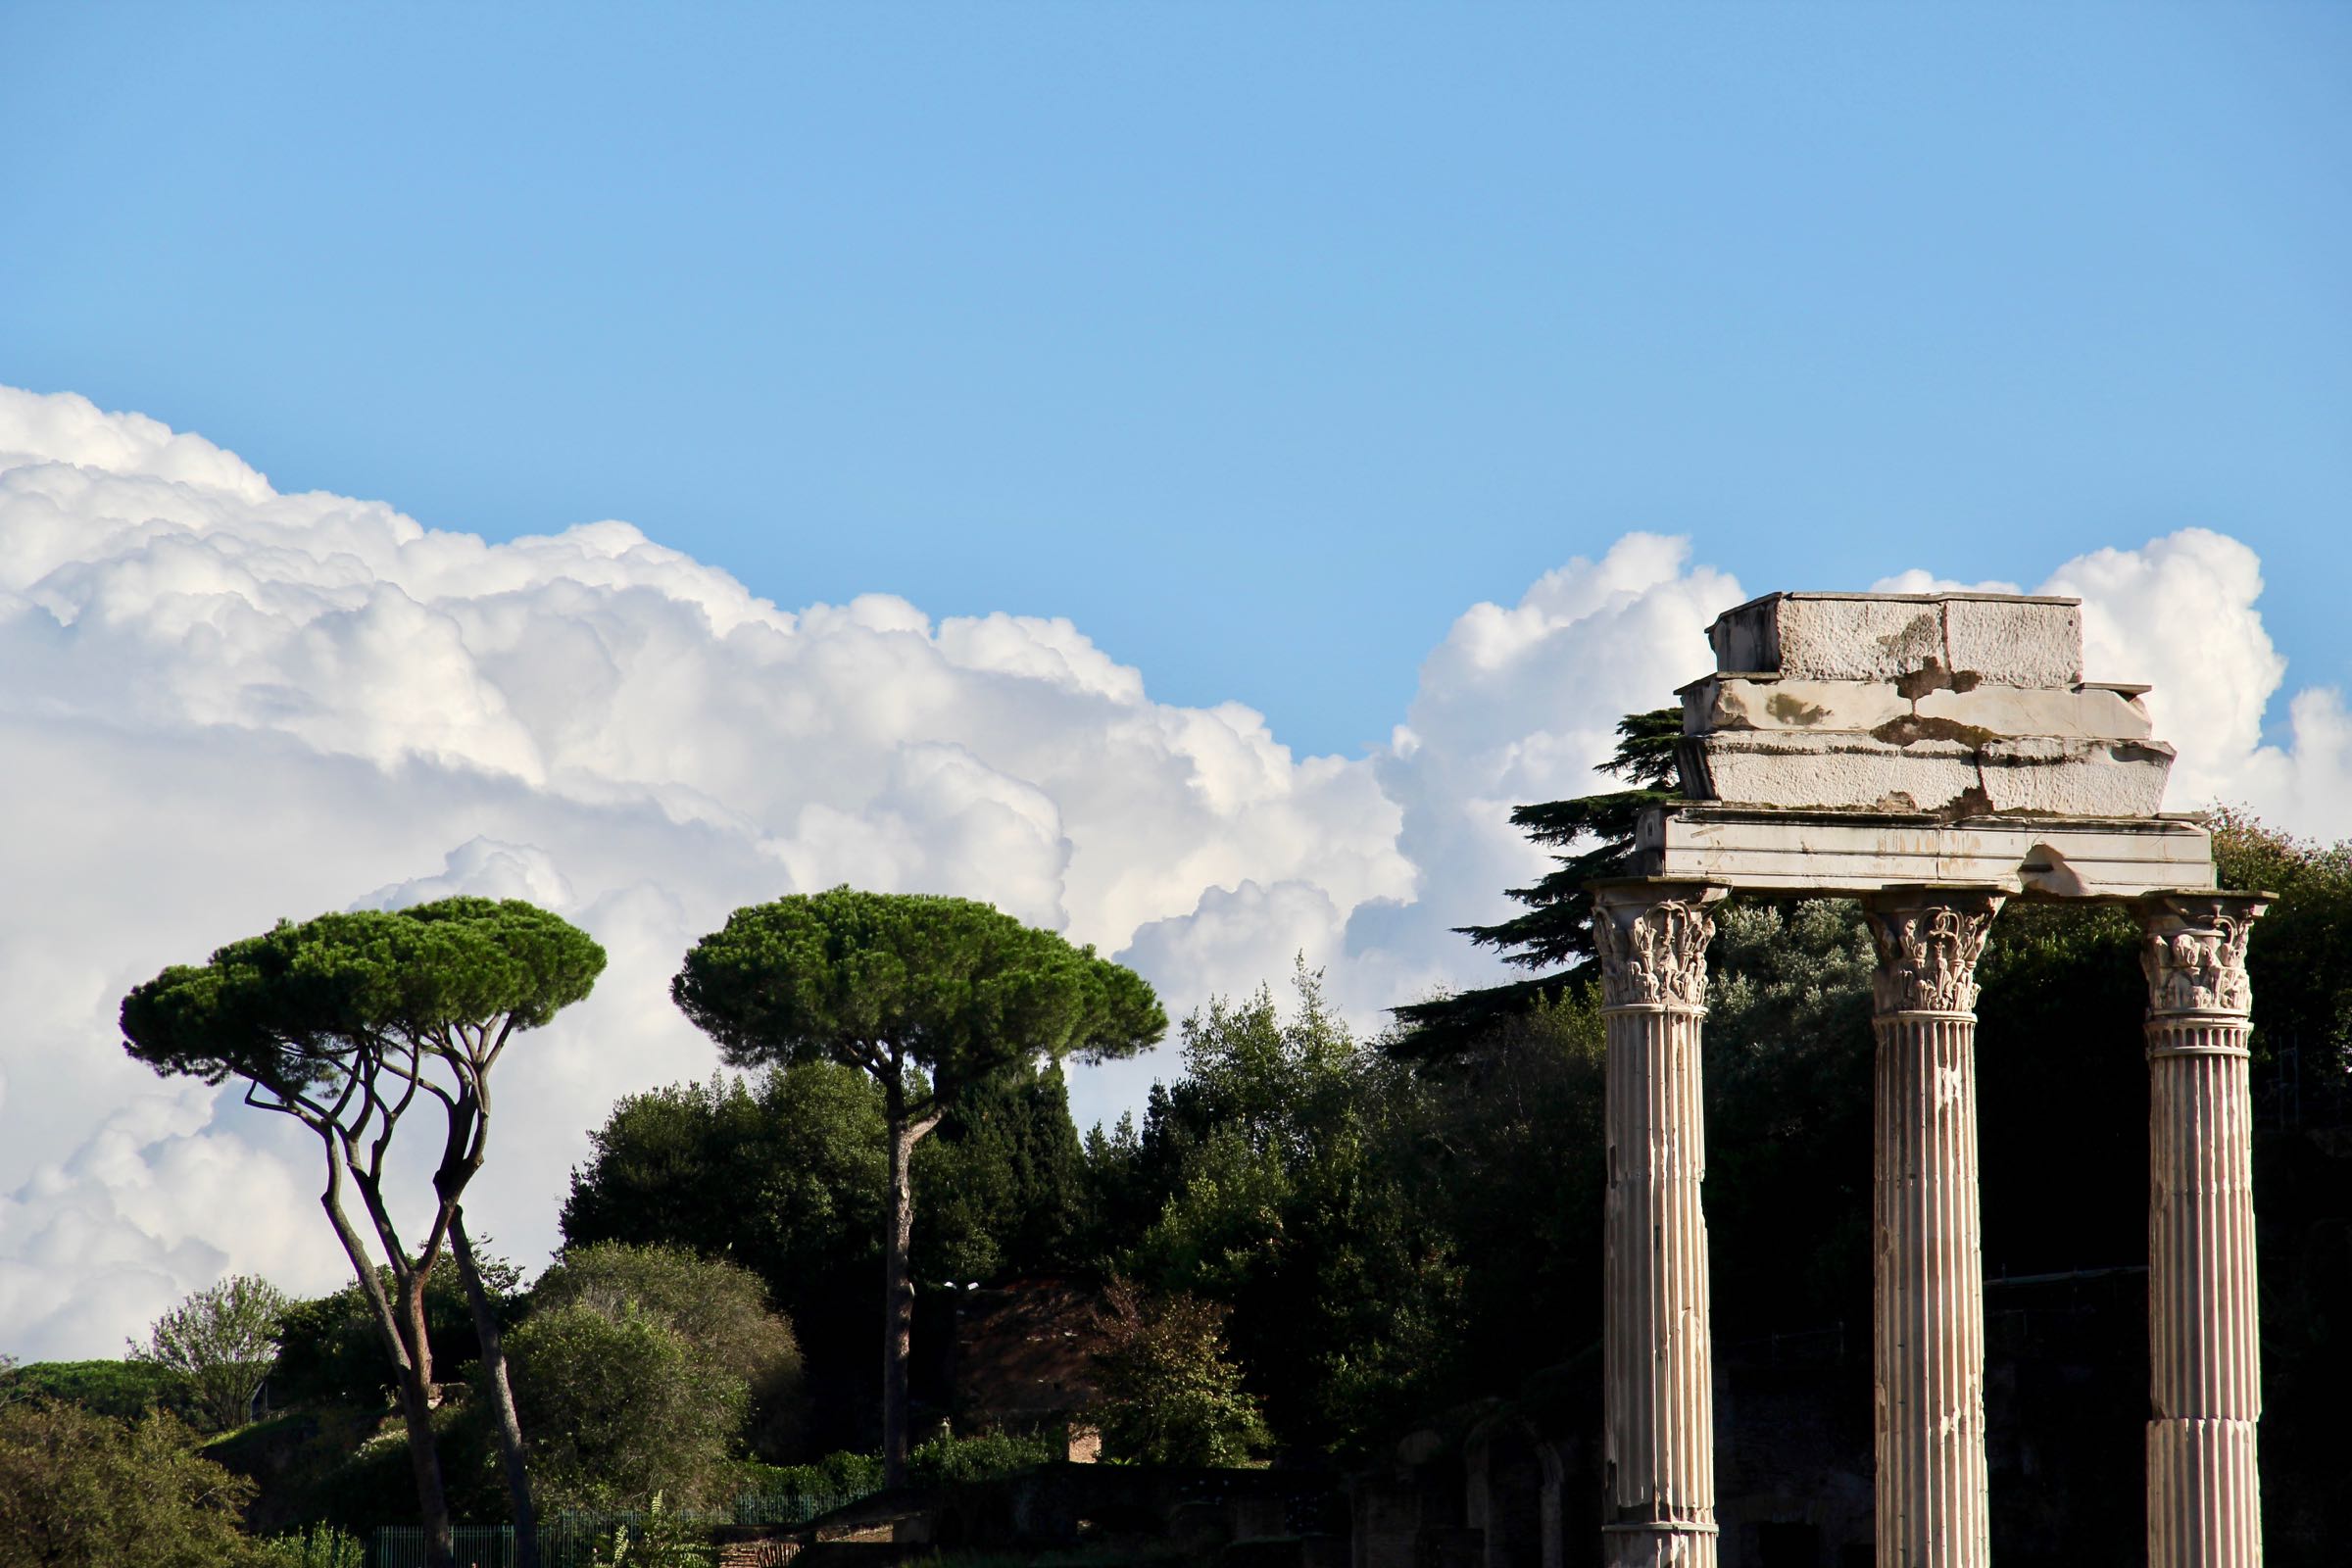 Tempelruine auf dem Forum Romanum, Rom, Italien